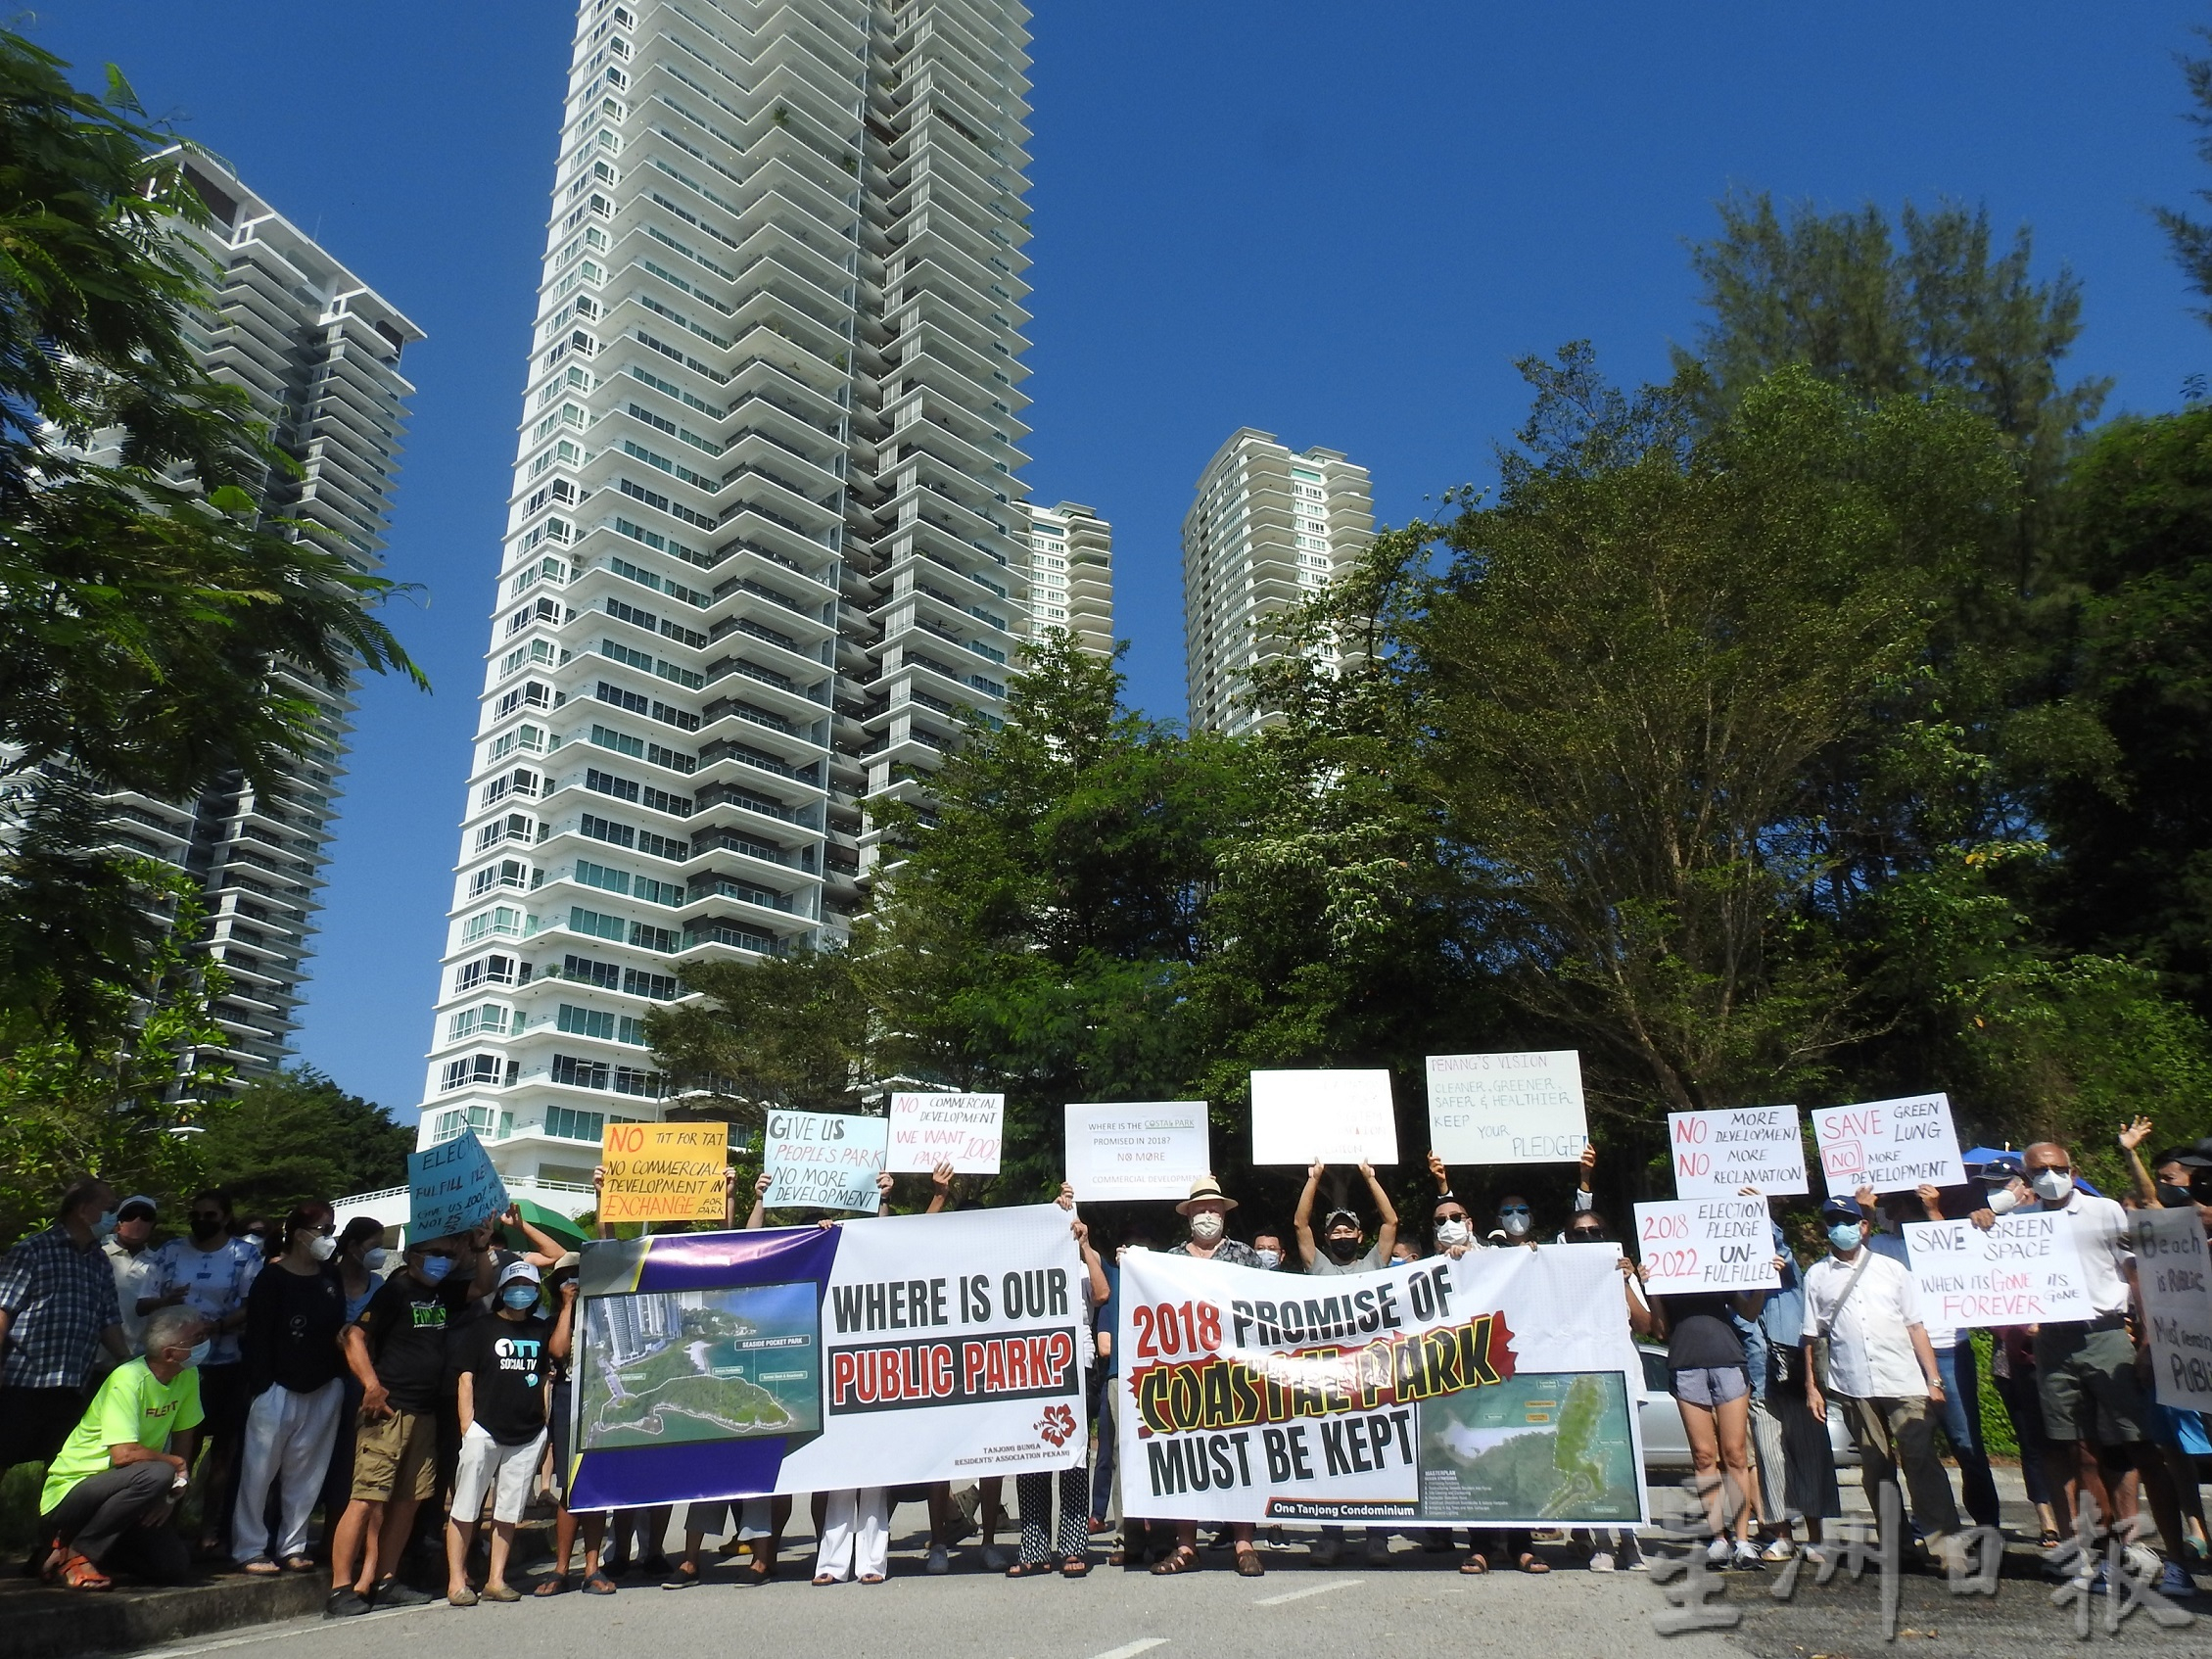 丹绒武雅居协拉布条抗议 “不要填海只要海滨公园”